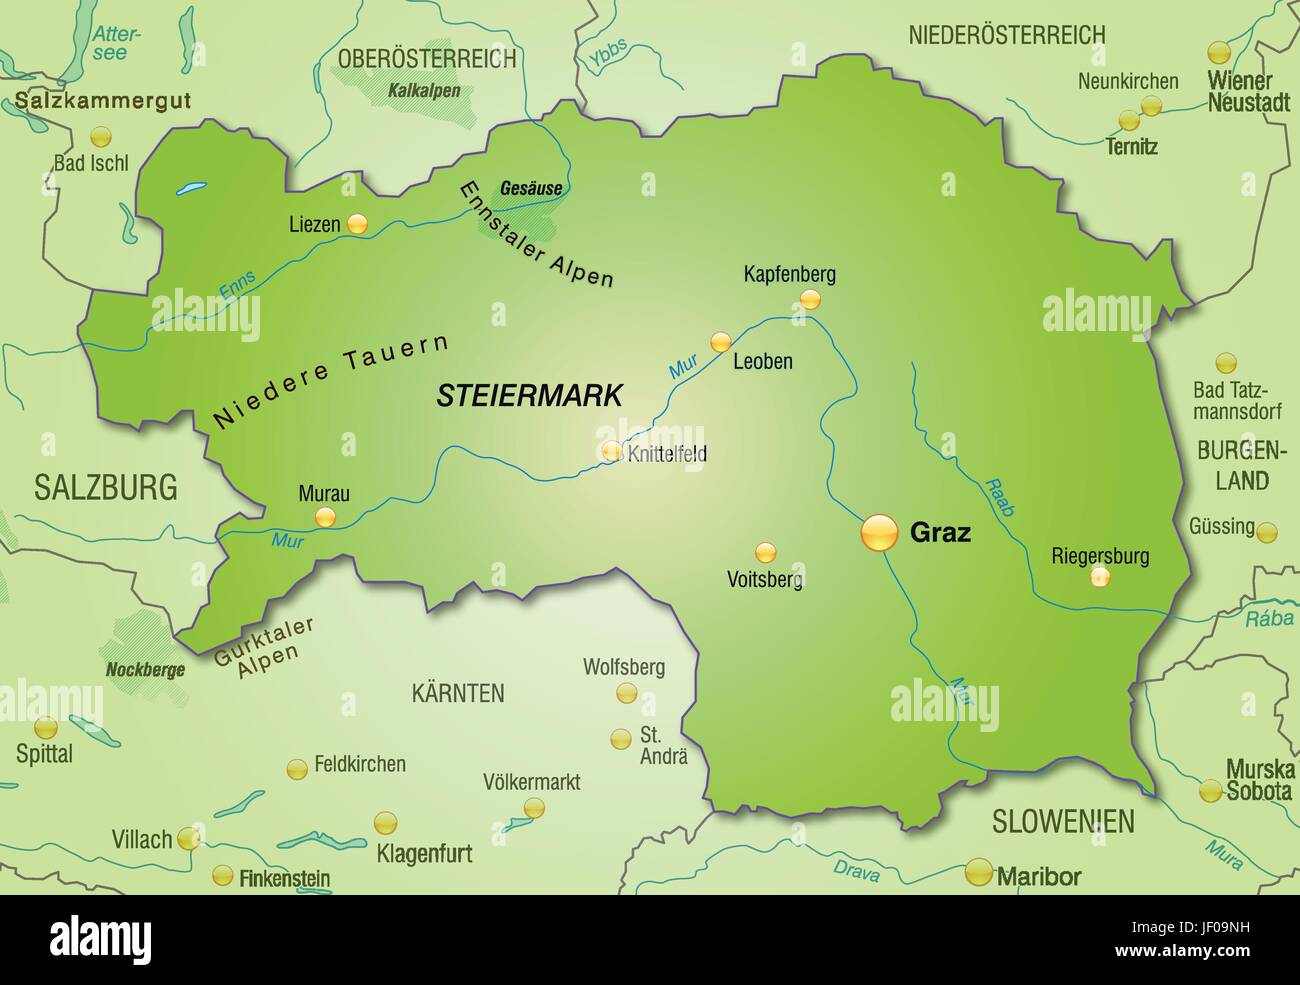 Karte der Steiermark als eine Übersichtskarte in grün Stock